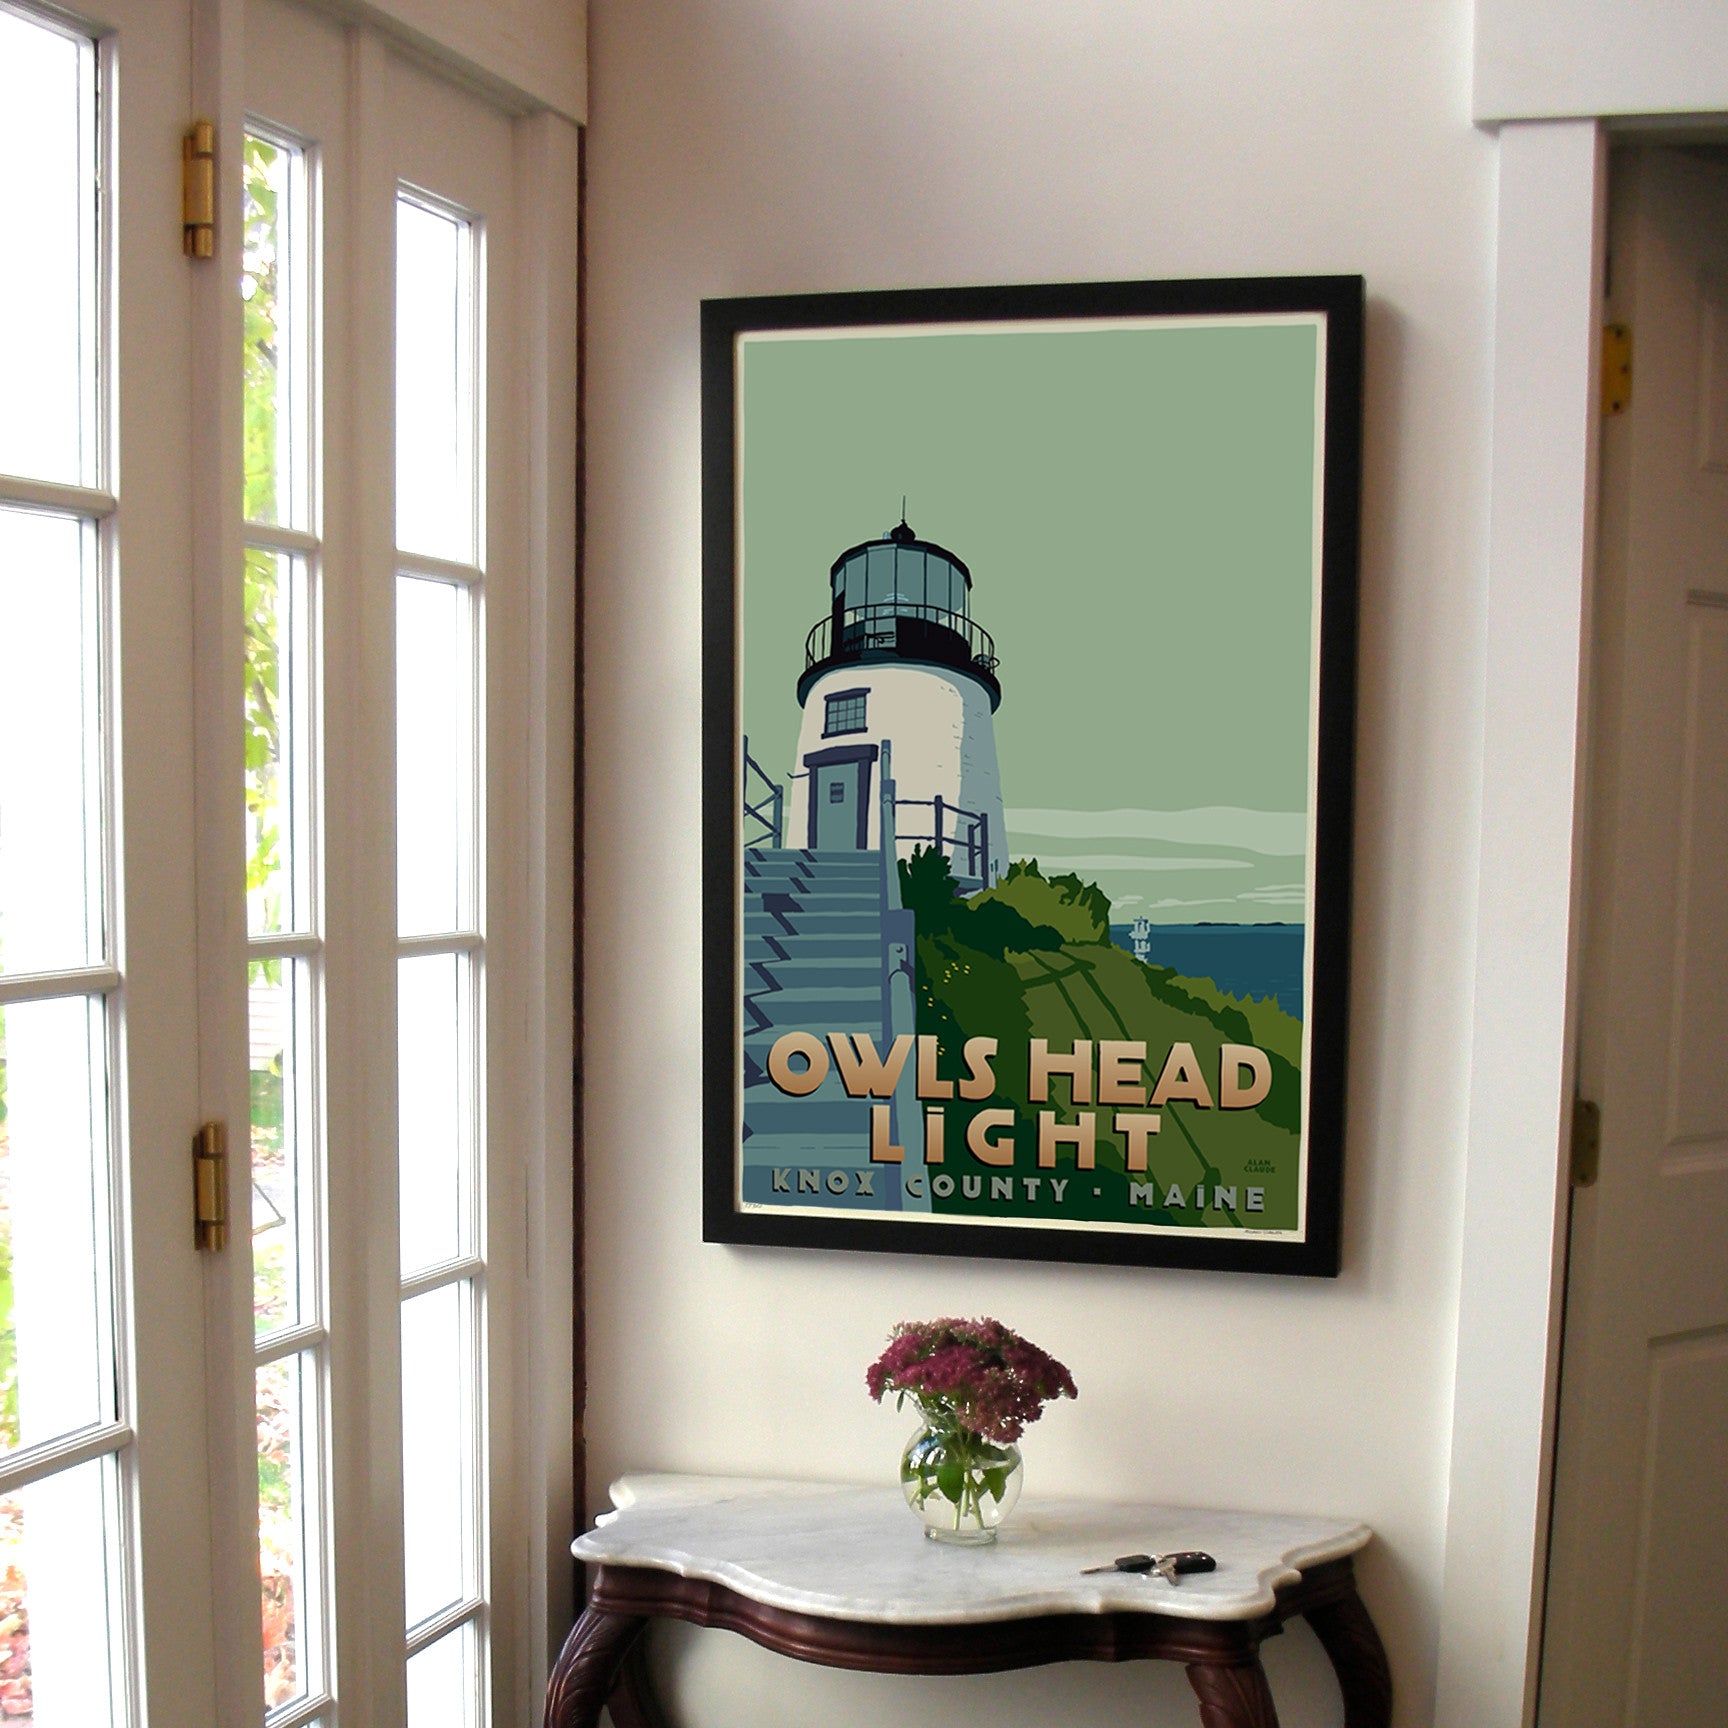 Owls Head Light Art Print 24" x 36" Framed Travel Poster By Alan Claude  - Maine